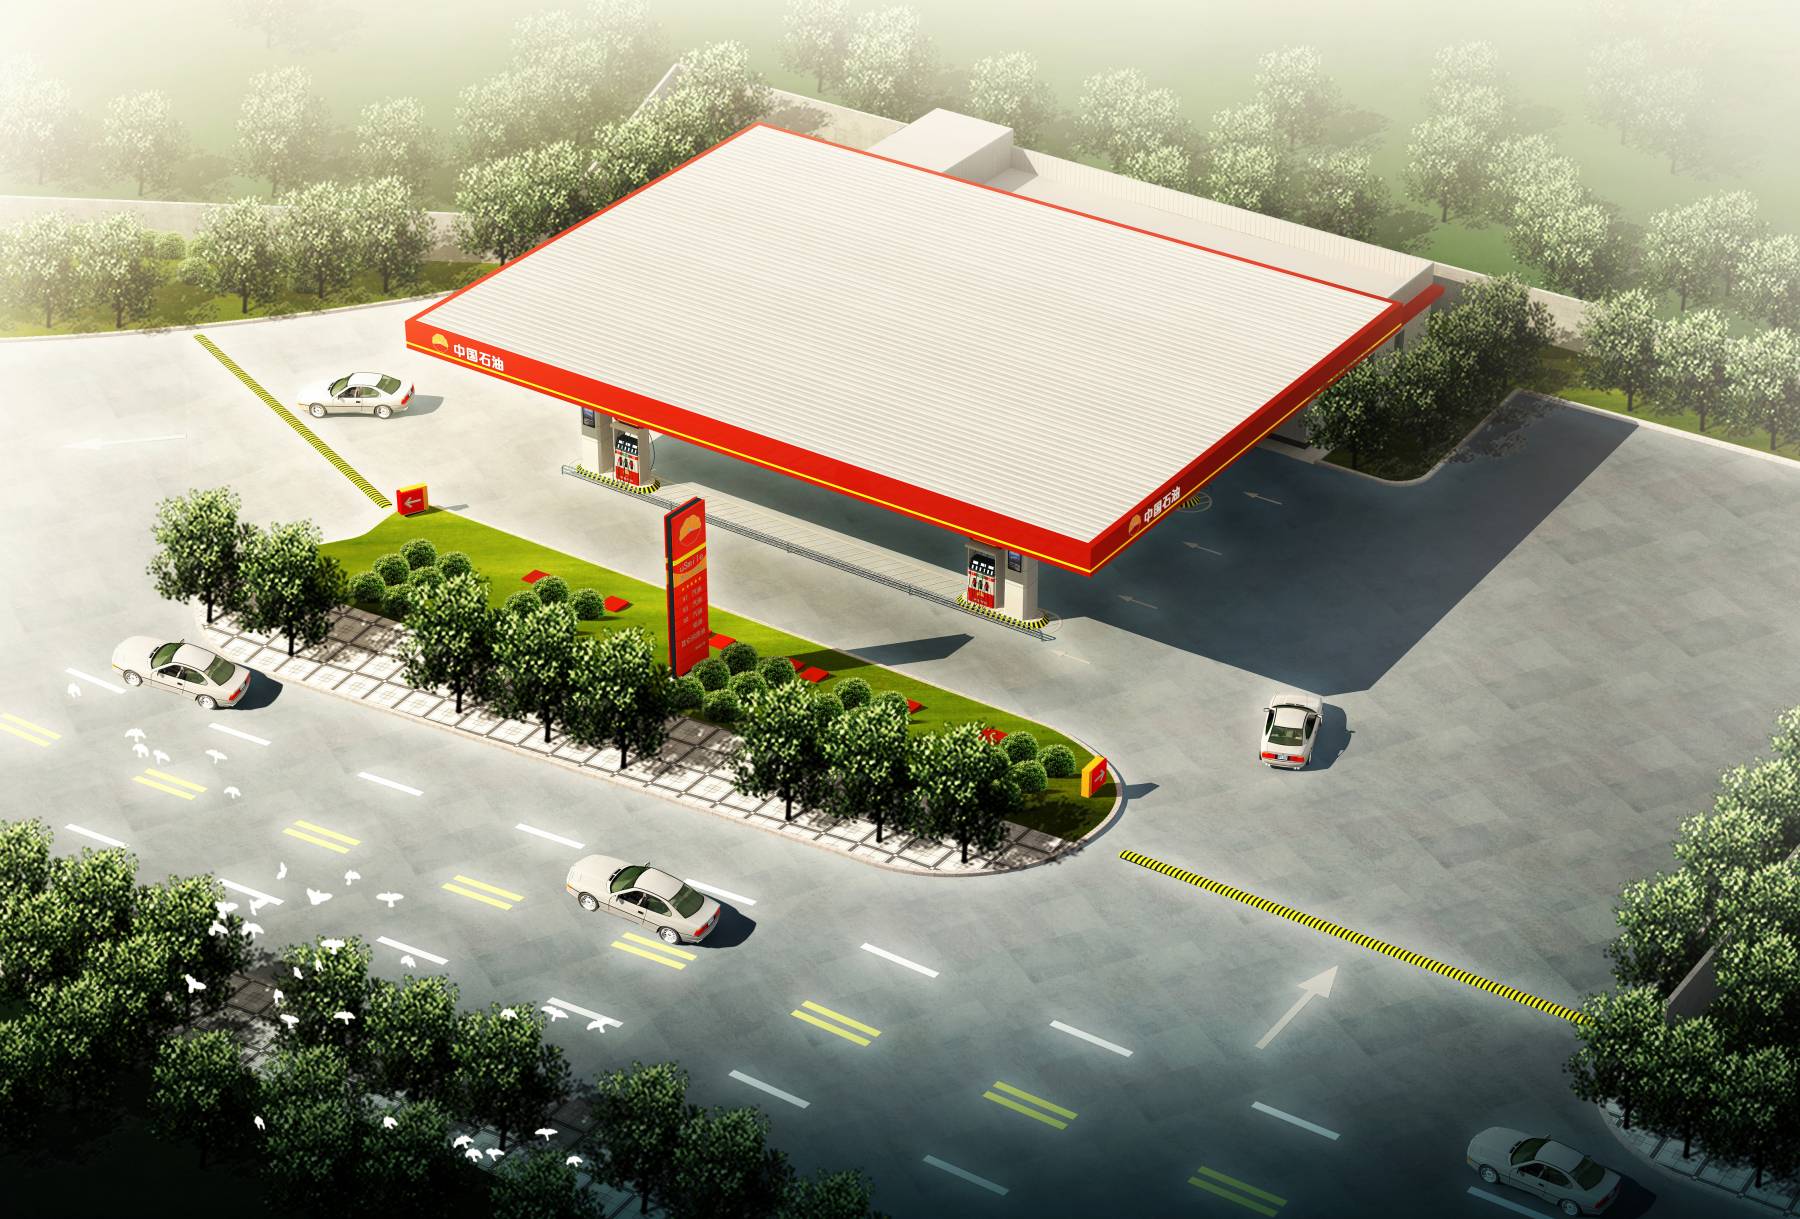 宝丰县信合石油销售有限公司新建加油站项目修建性详细规划公示